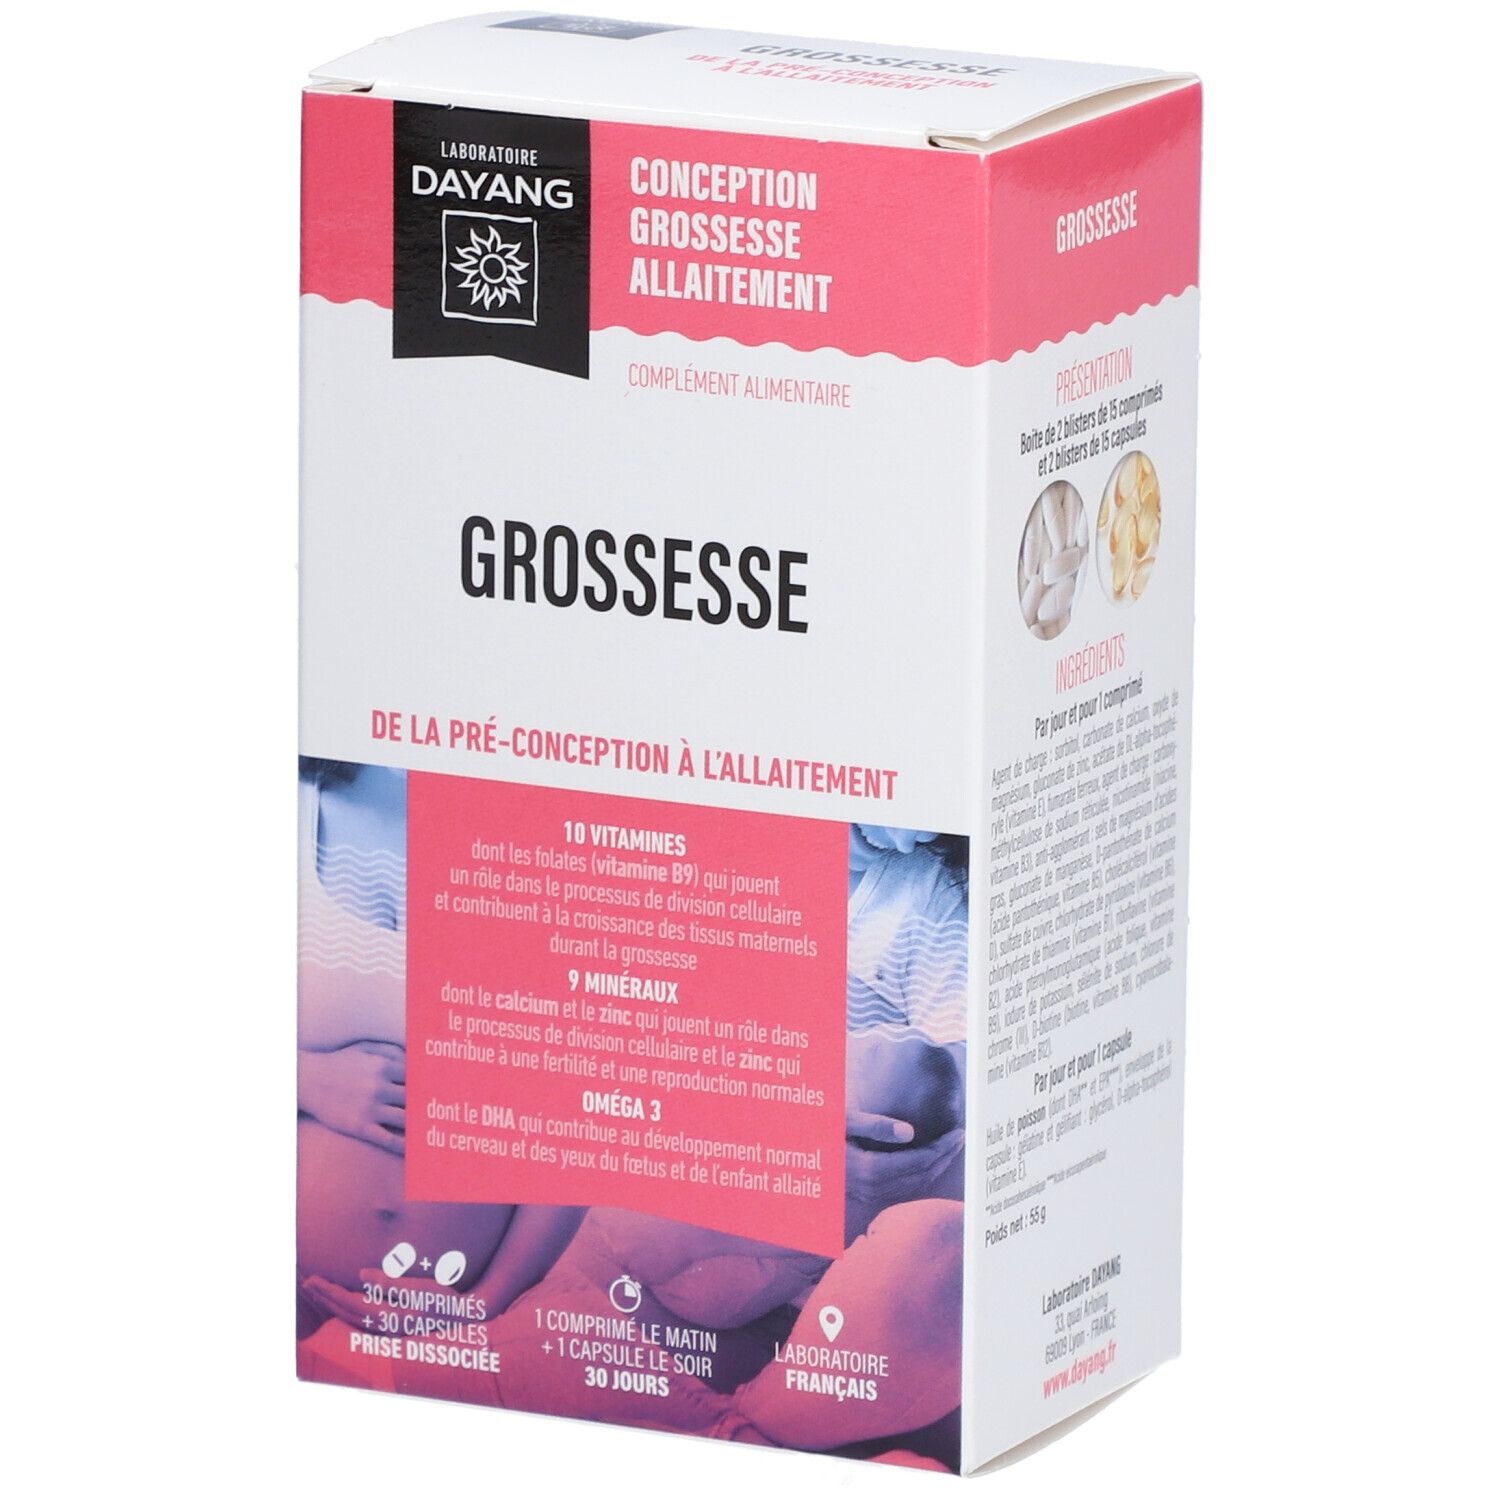 Dayang Grossesse - Comprimé + capsule, complément alimentaire pour la grossesse. - bt 30